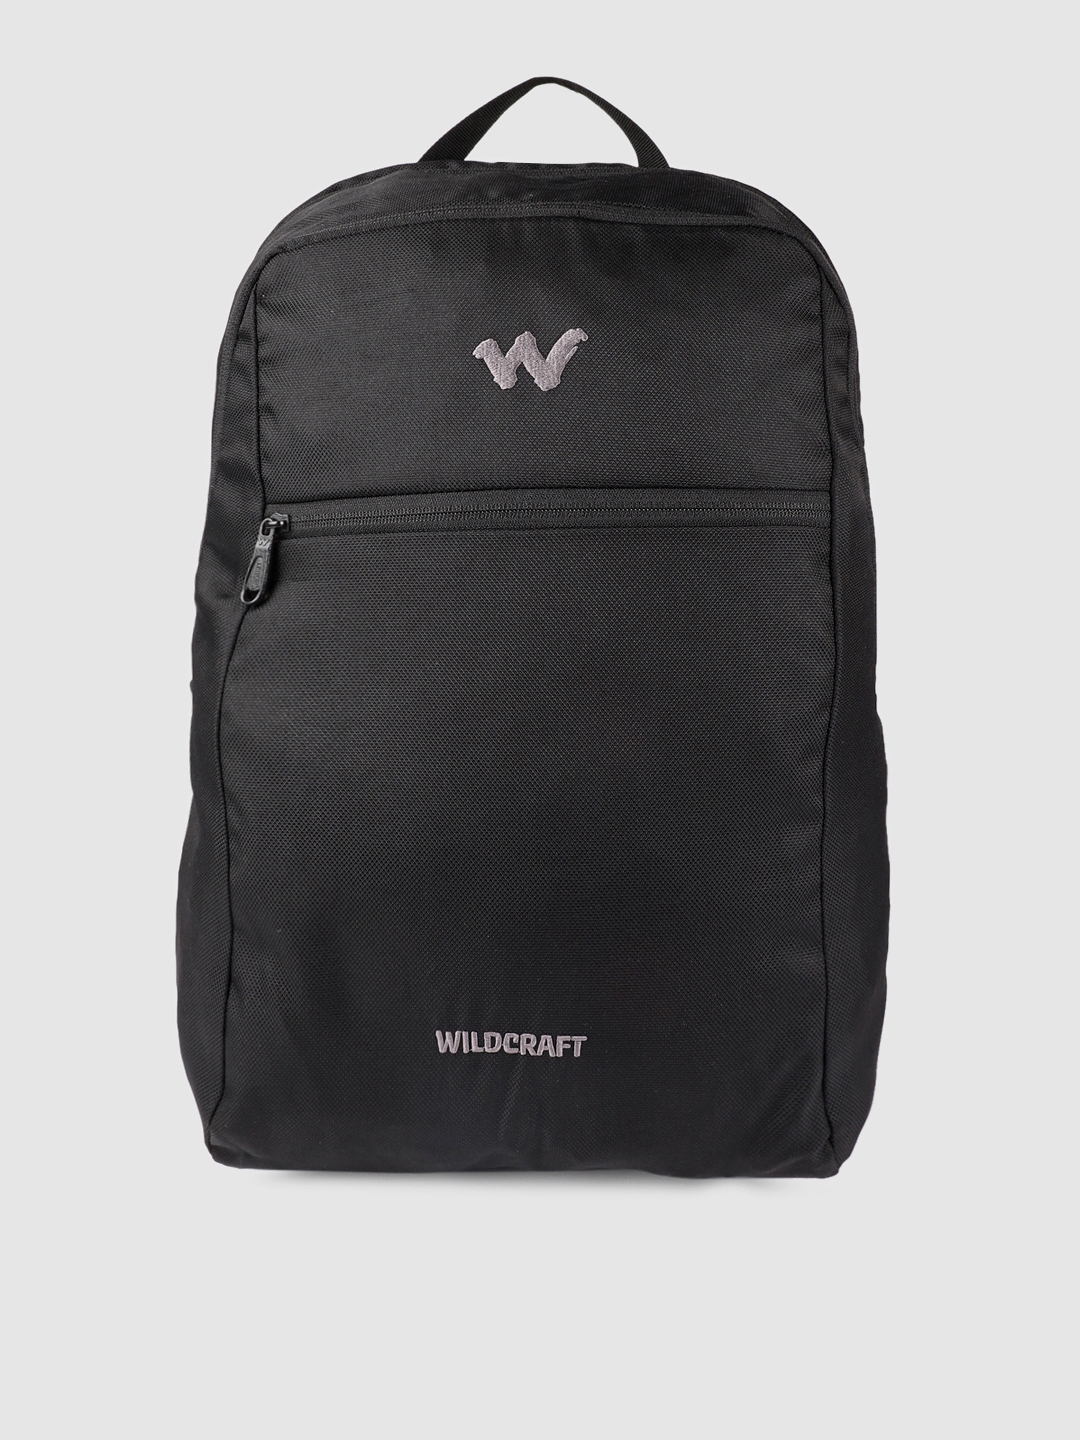 Printed Wildcraft School Black Bags